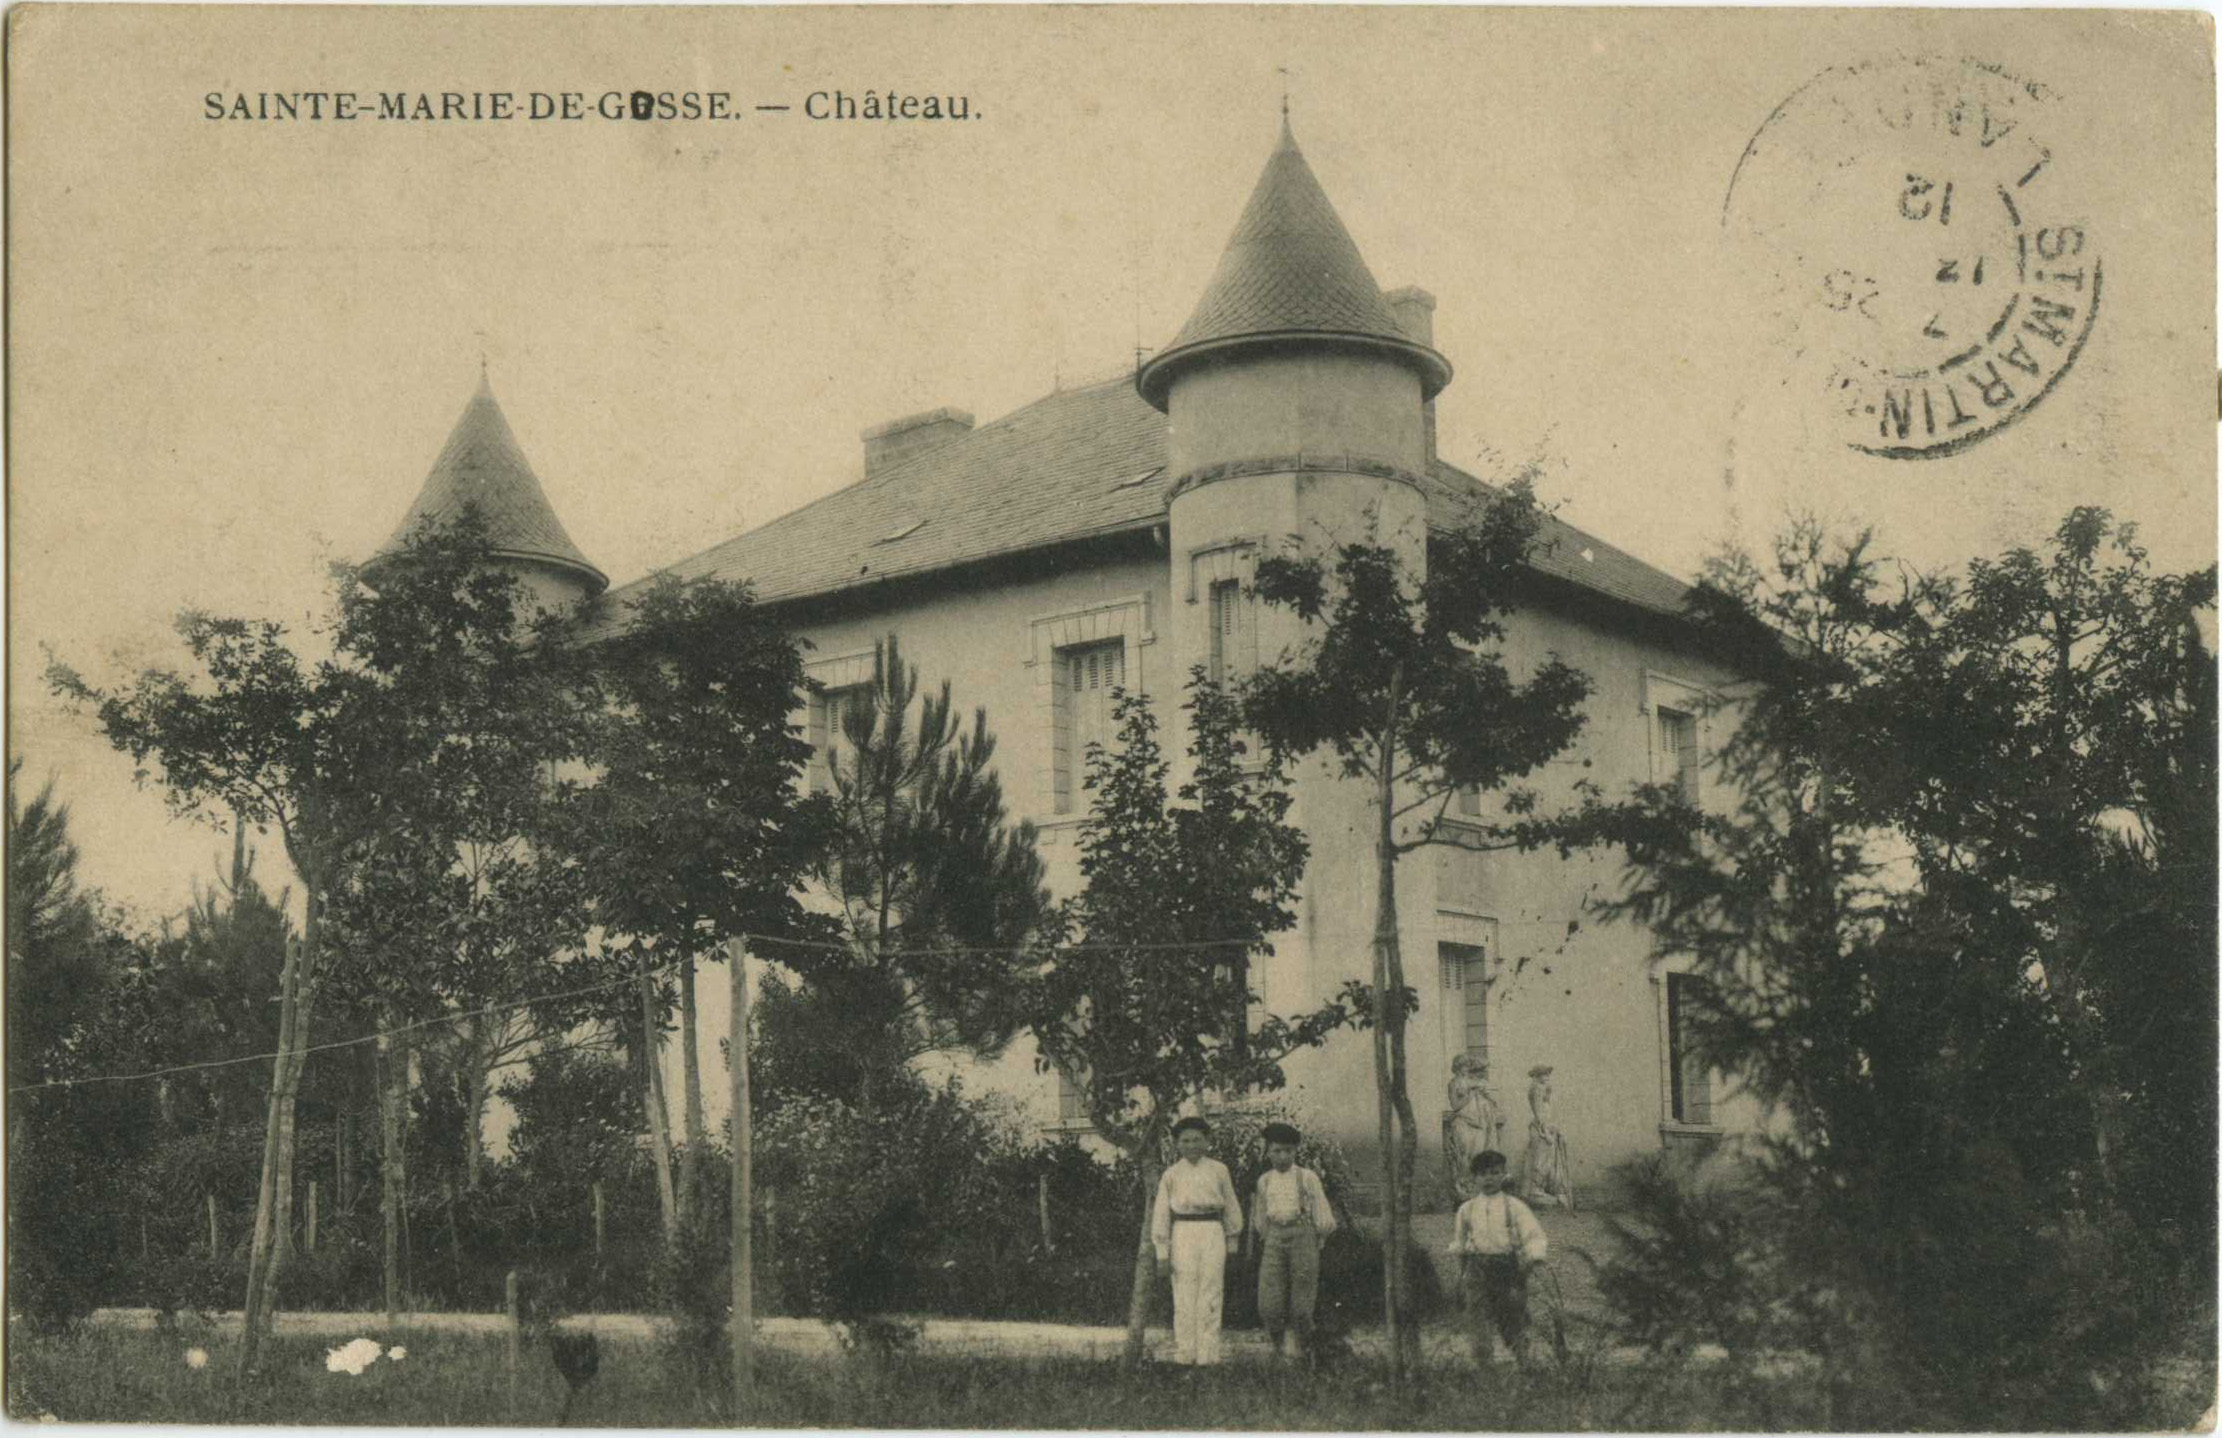 Sainte-Marie-de-Gosse - Château.